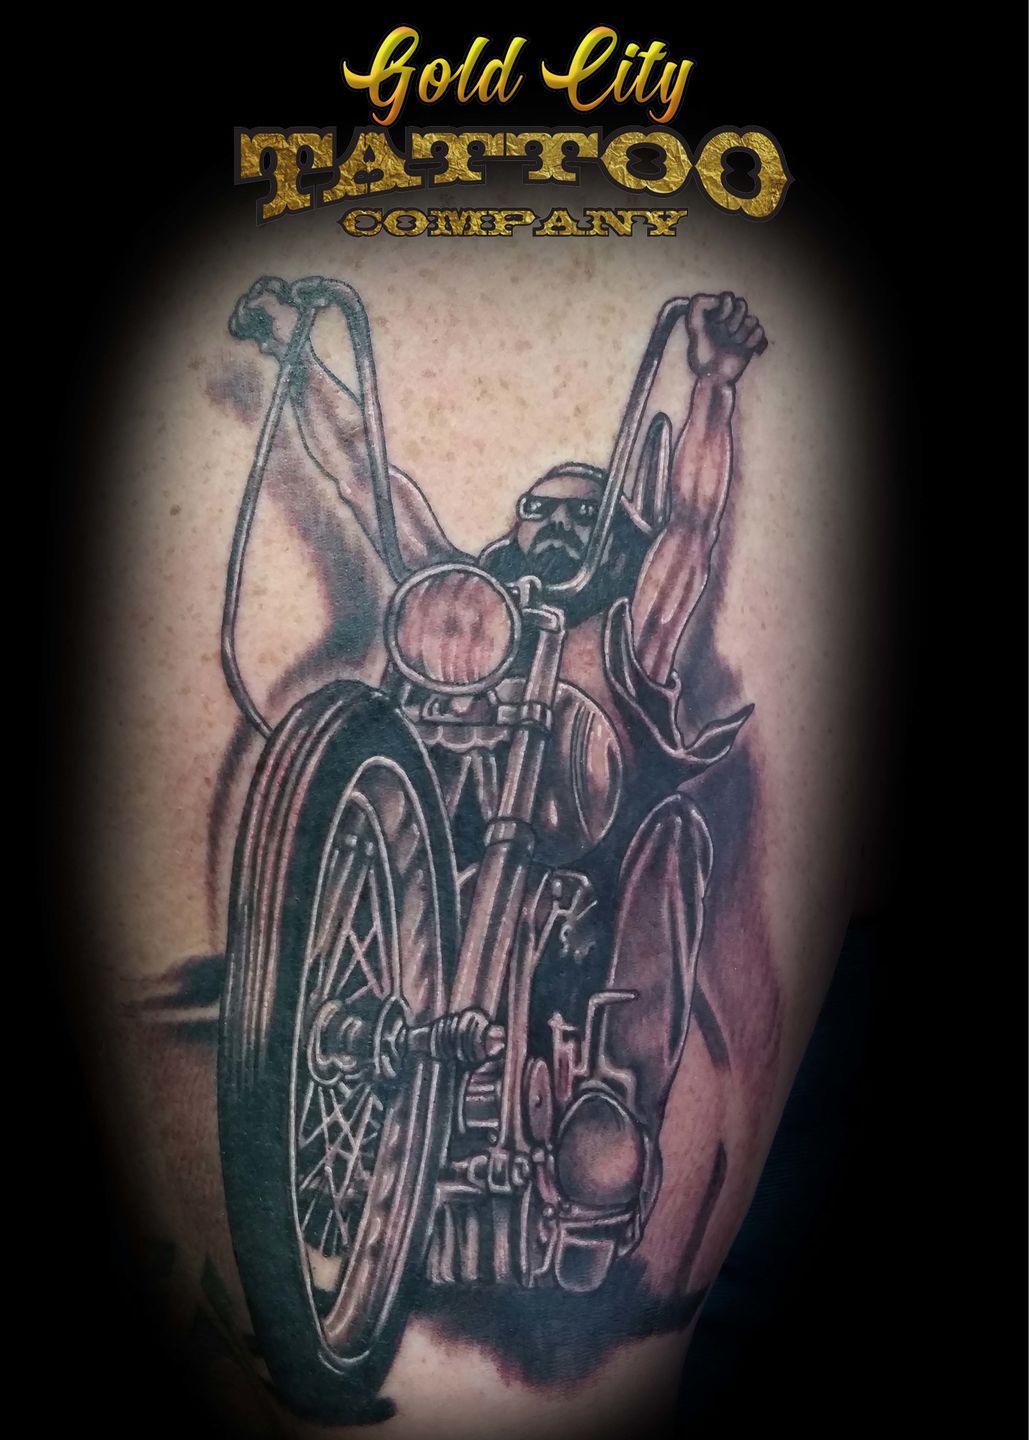 Chopper Tattoo Designs  Orange County Chopper Tattoo by Parinita Gosai   Issuu